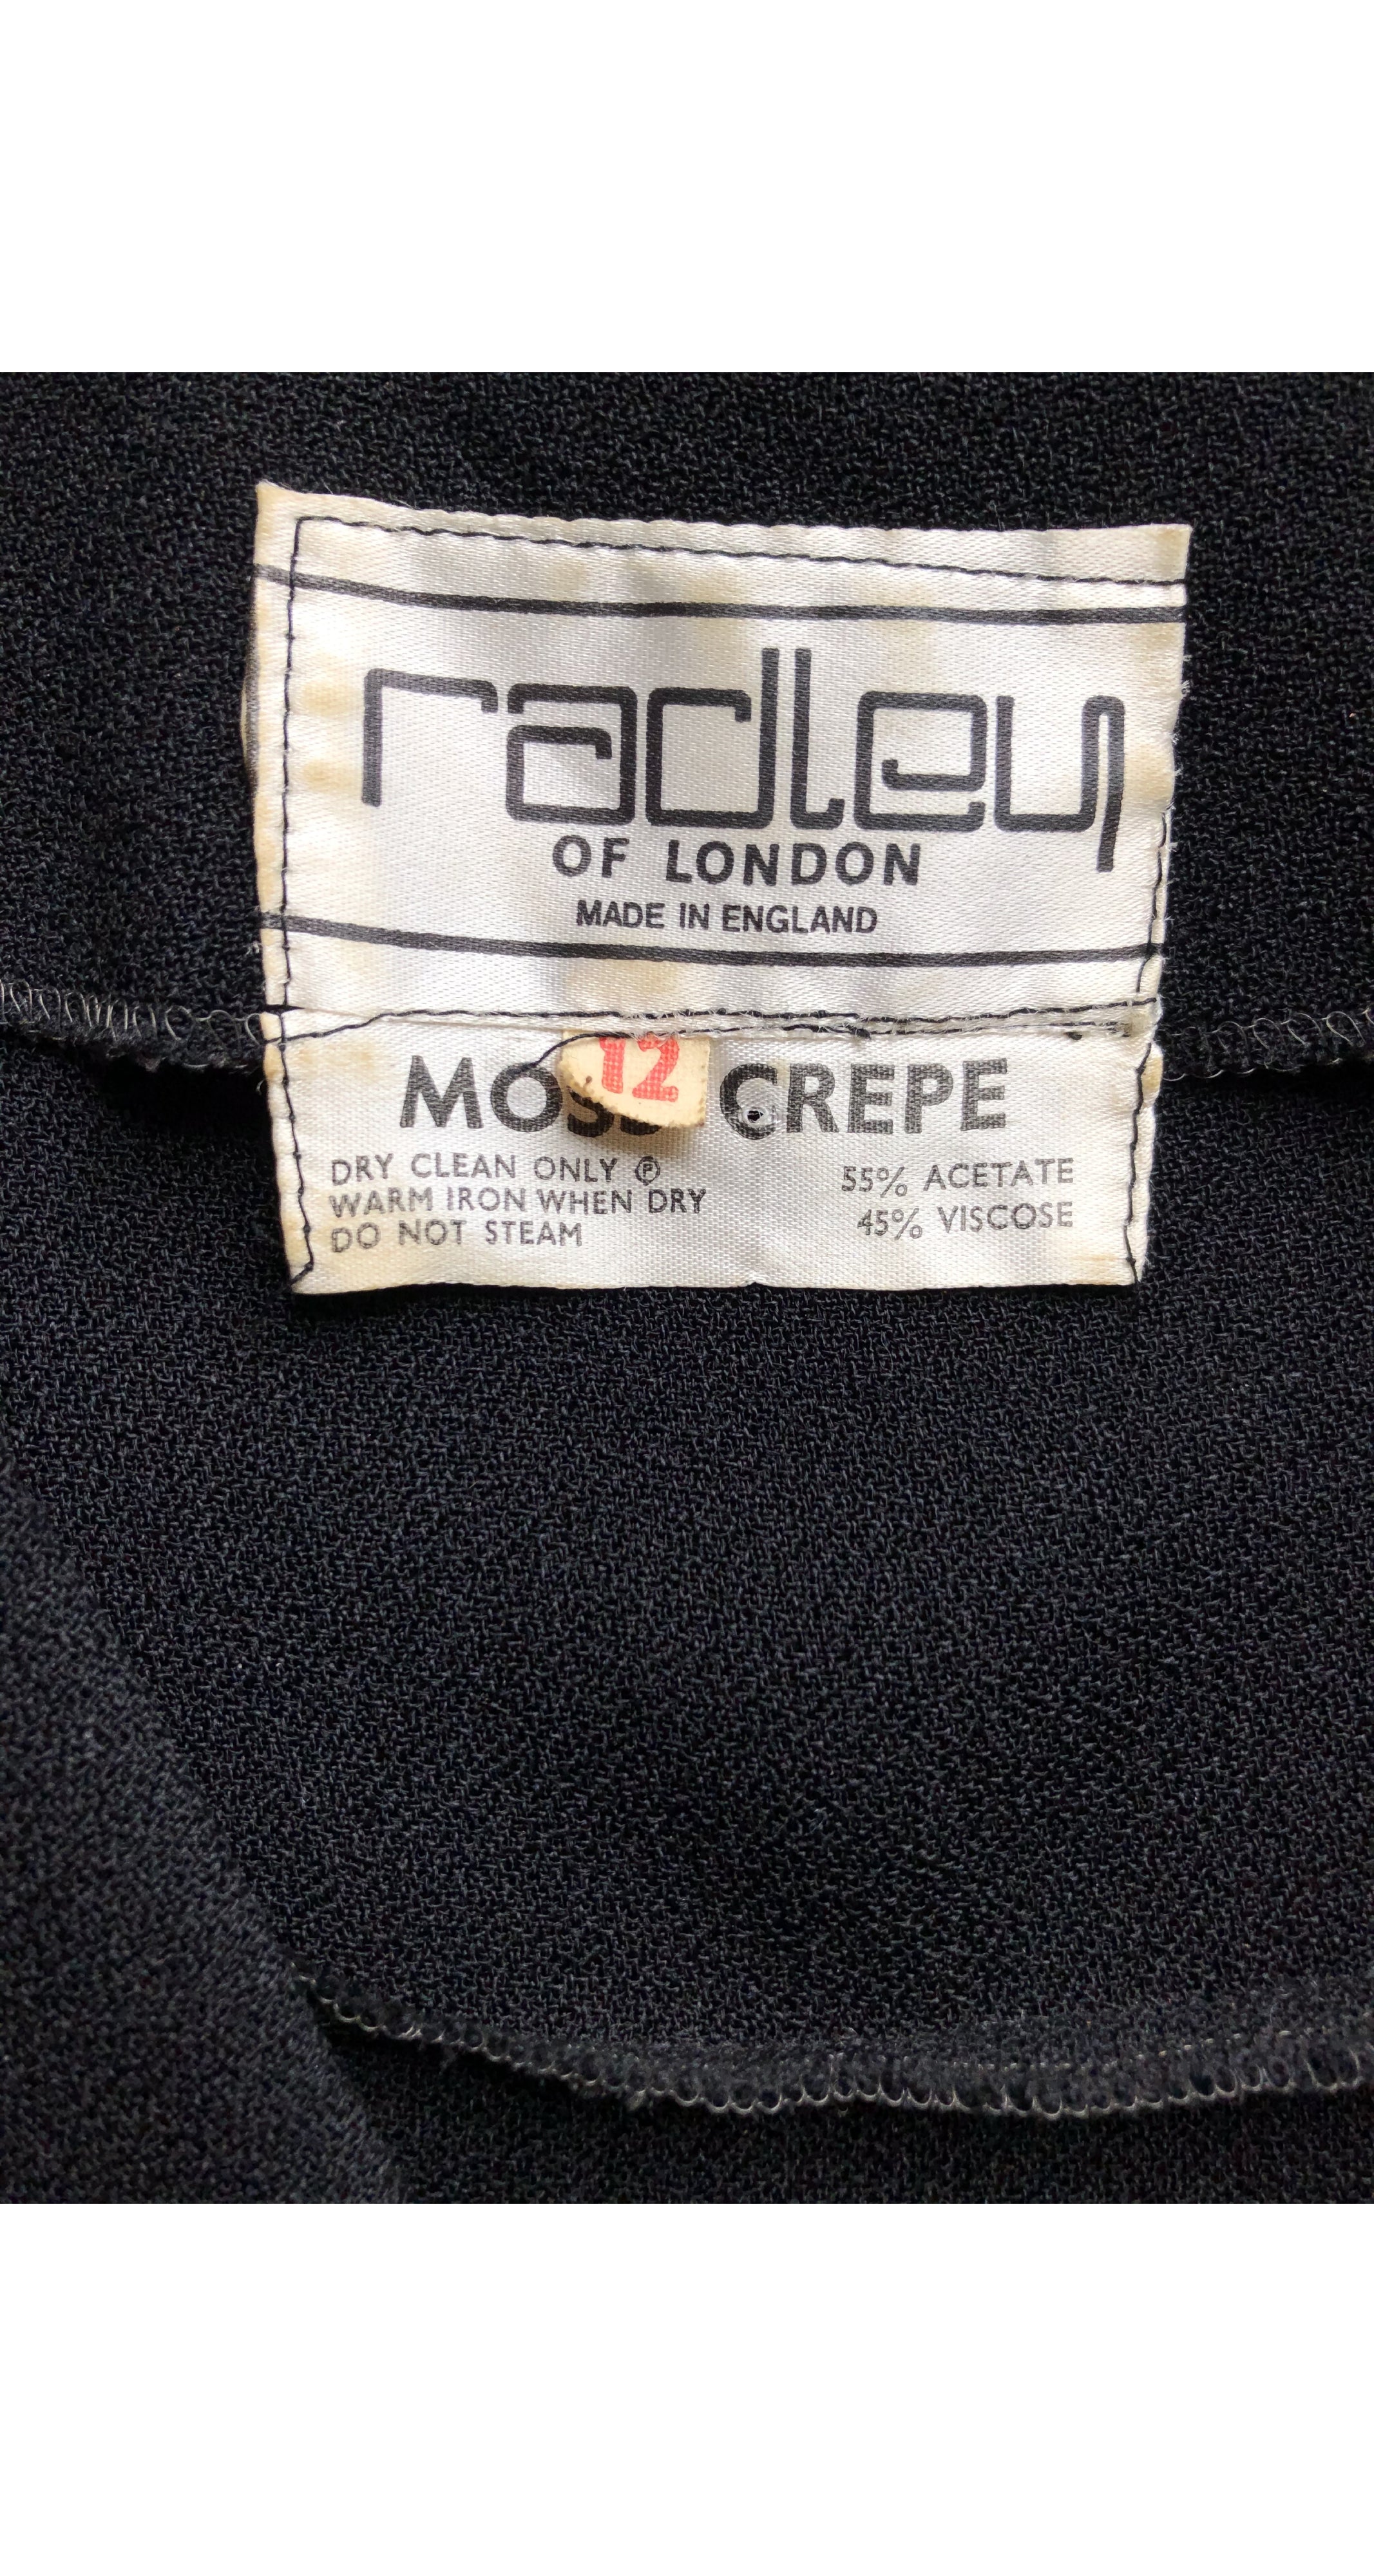 Radley 1970s Ossie Clark Design Black Moss Crepe Jacket